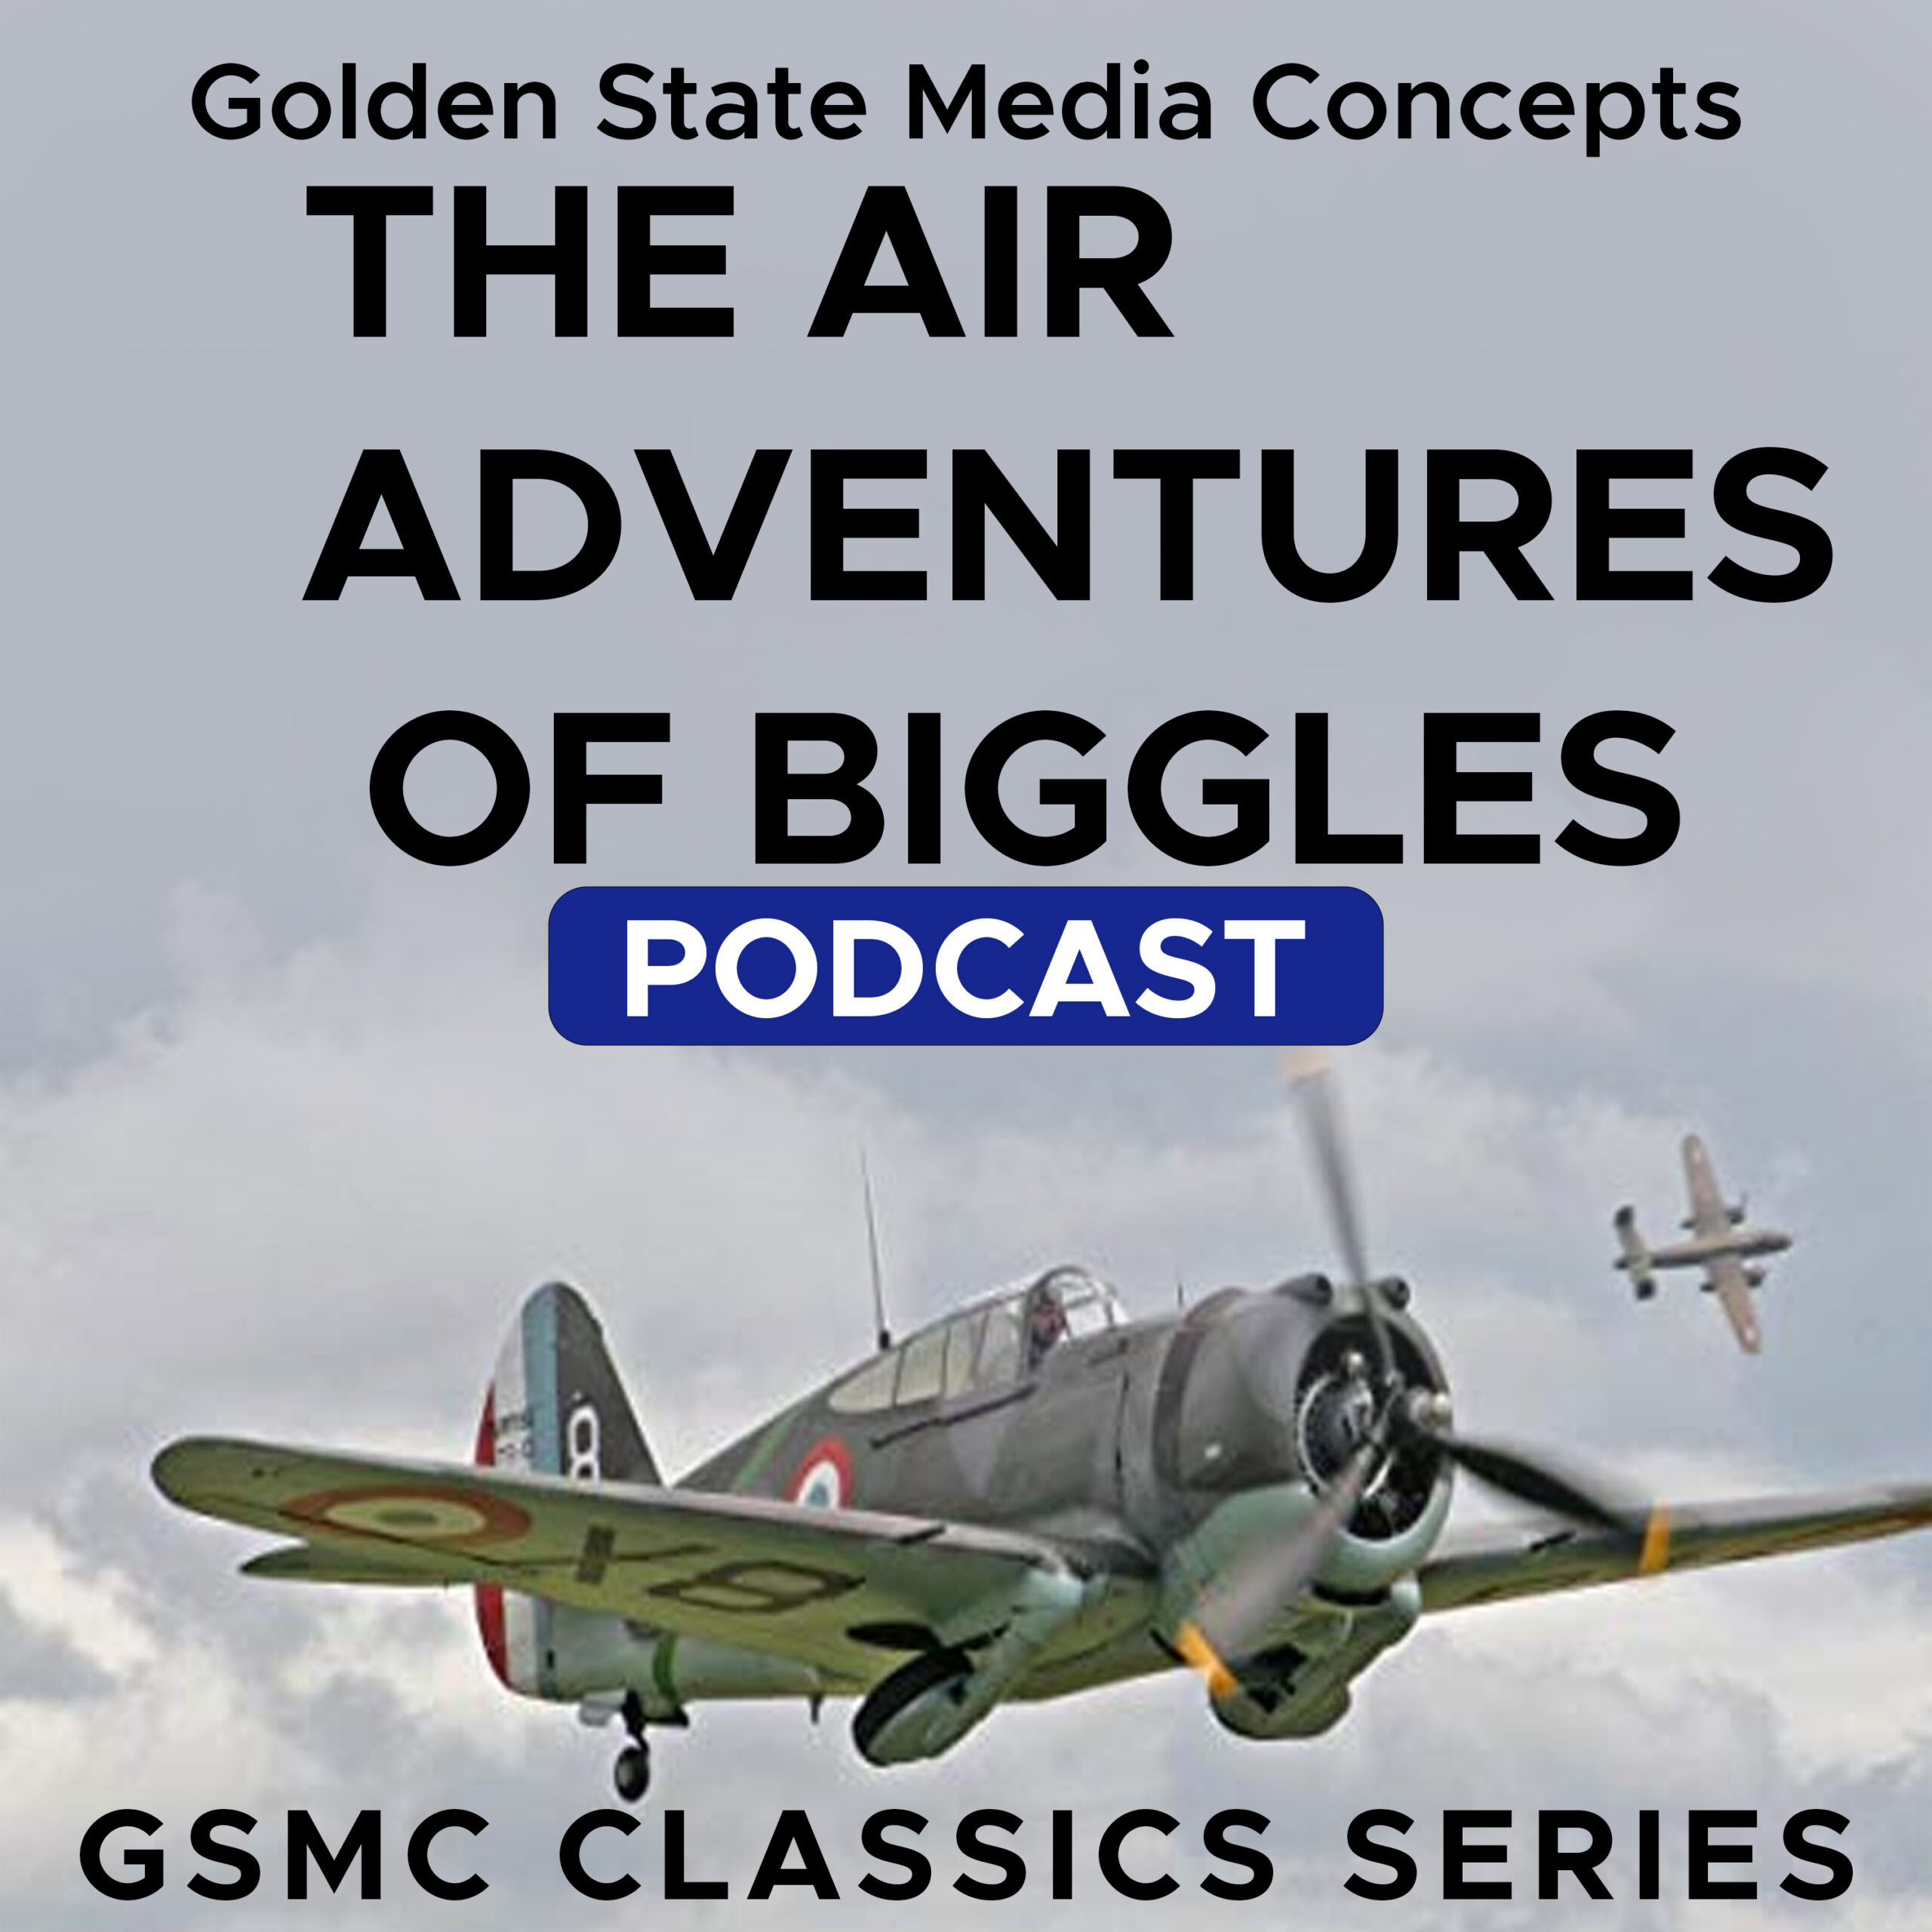 GSMC Classics: The Air Adventures of Biggles